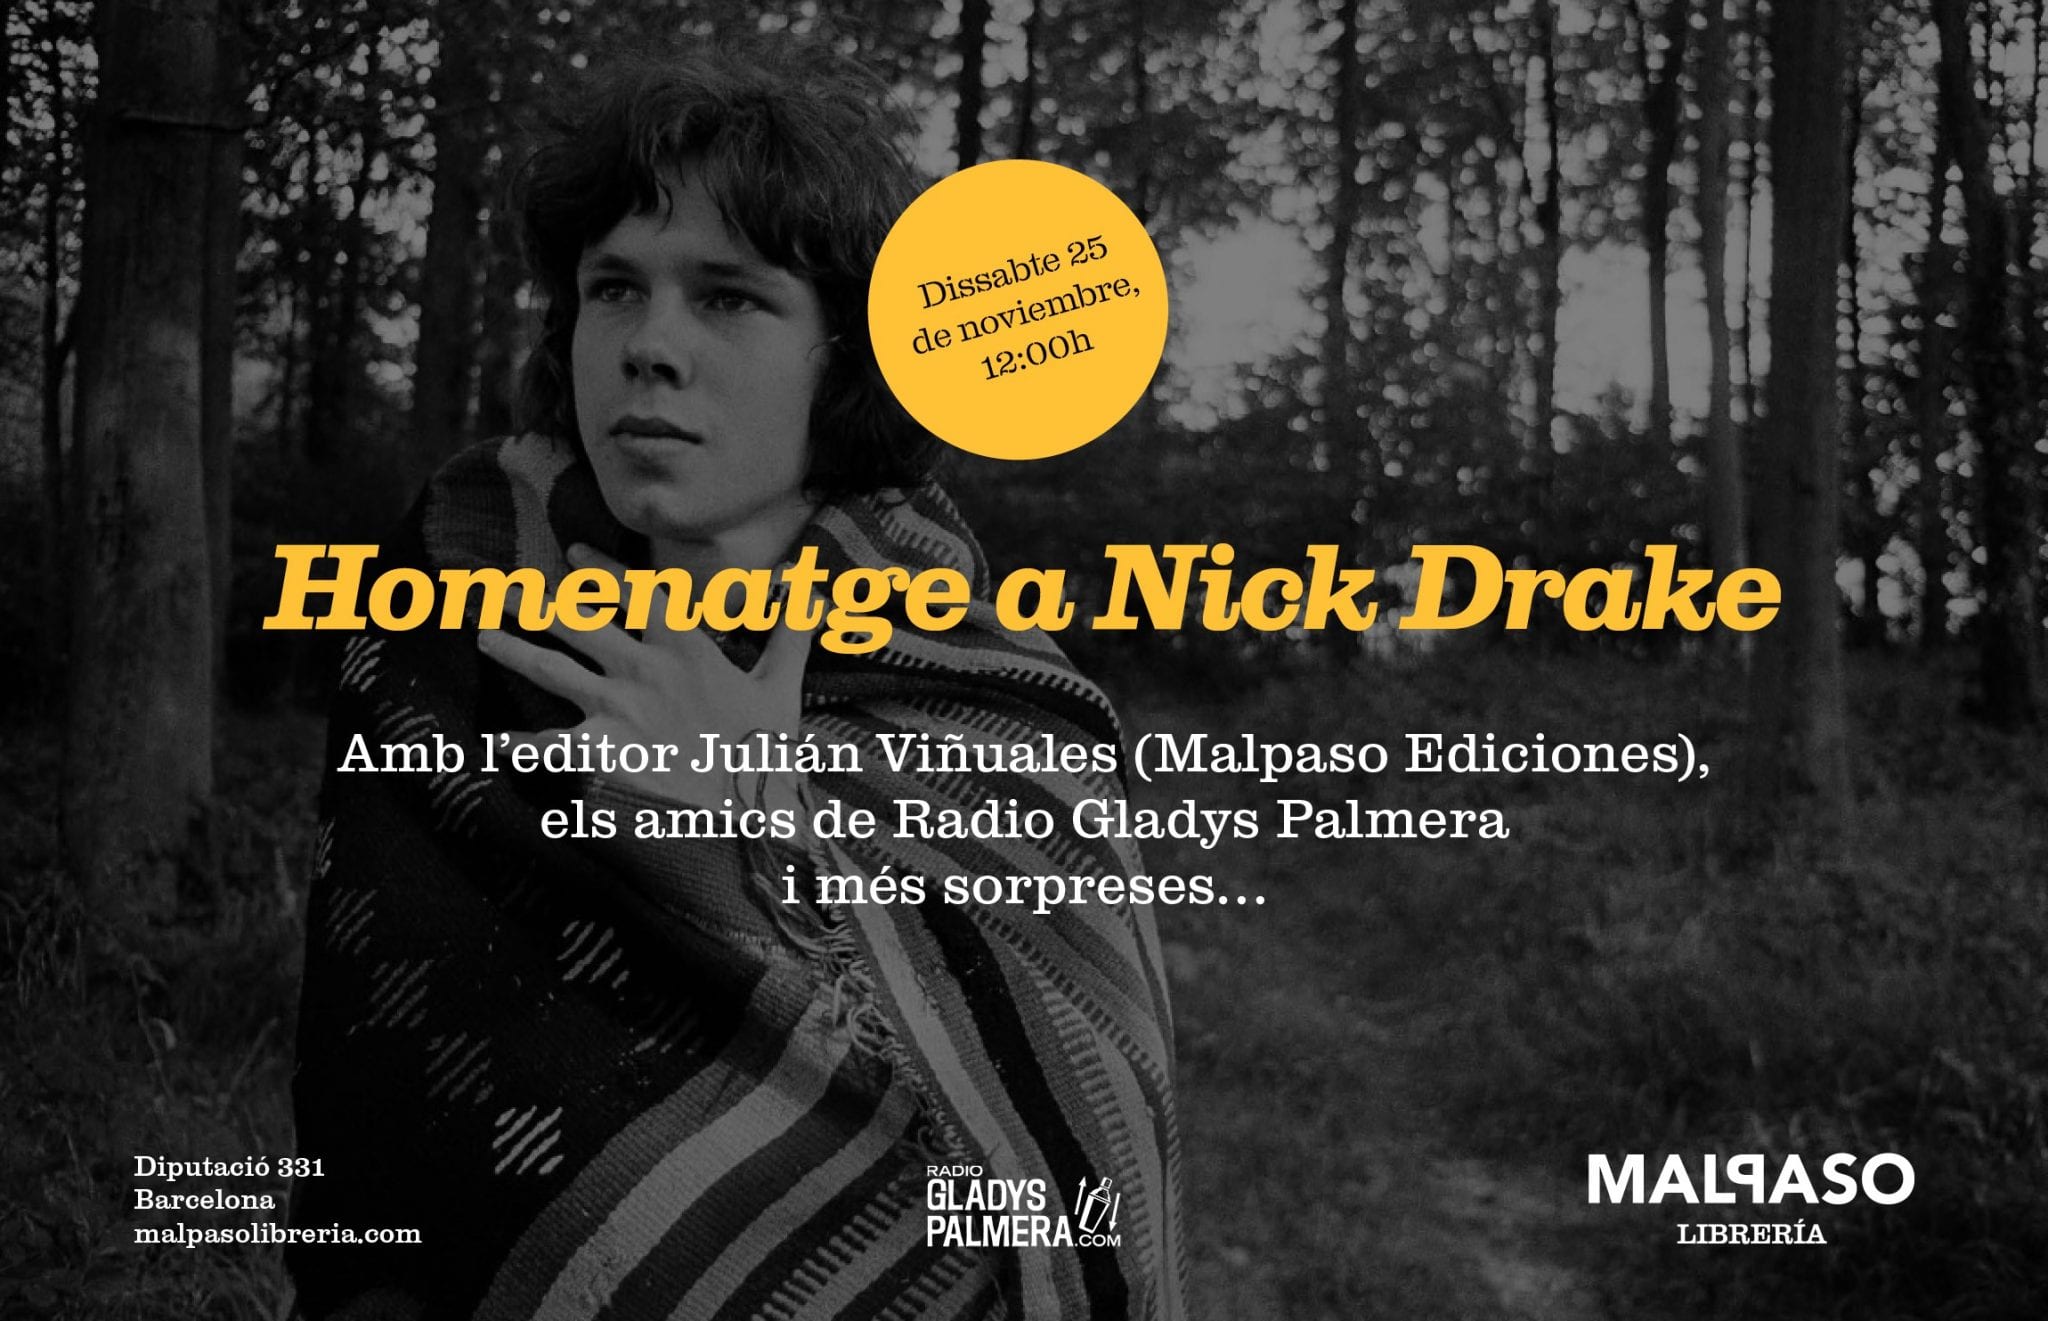 Homenaje a NICK DRAKE en Barcelona el próximo sábado en Malpaso Librería